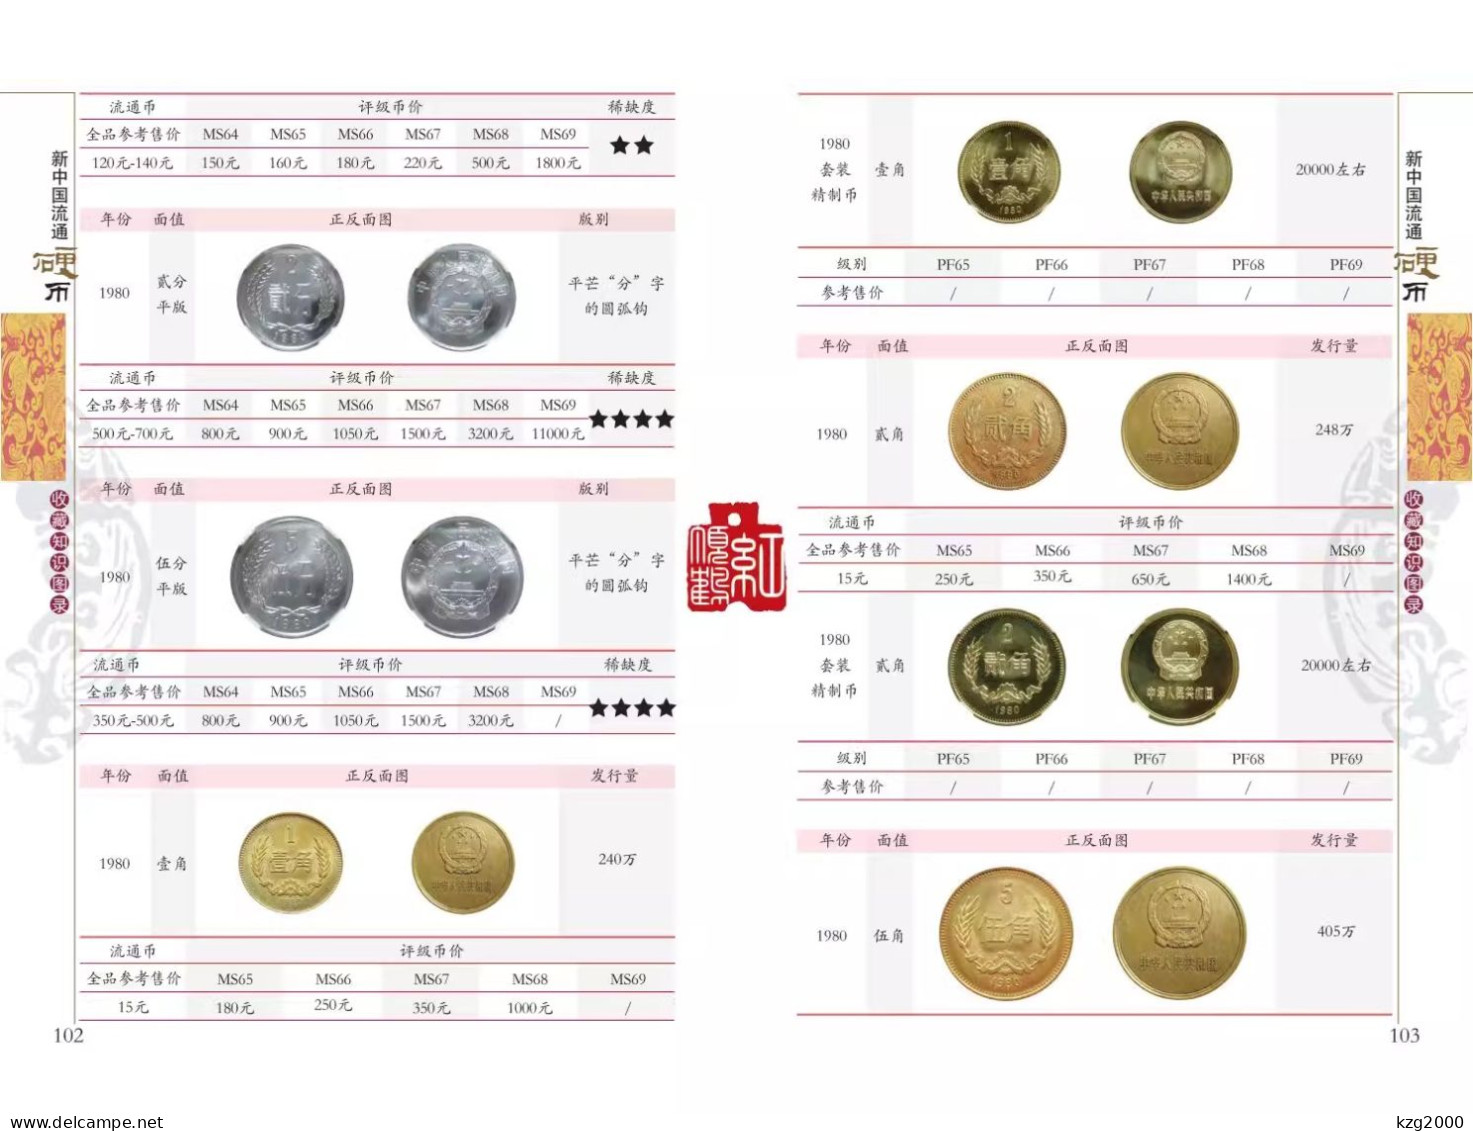 China Coin  RMB 1955-2022 Coins catalogue